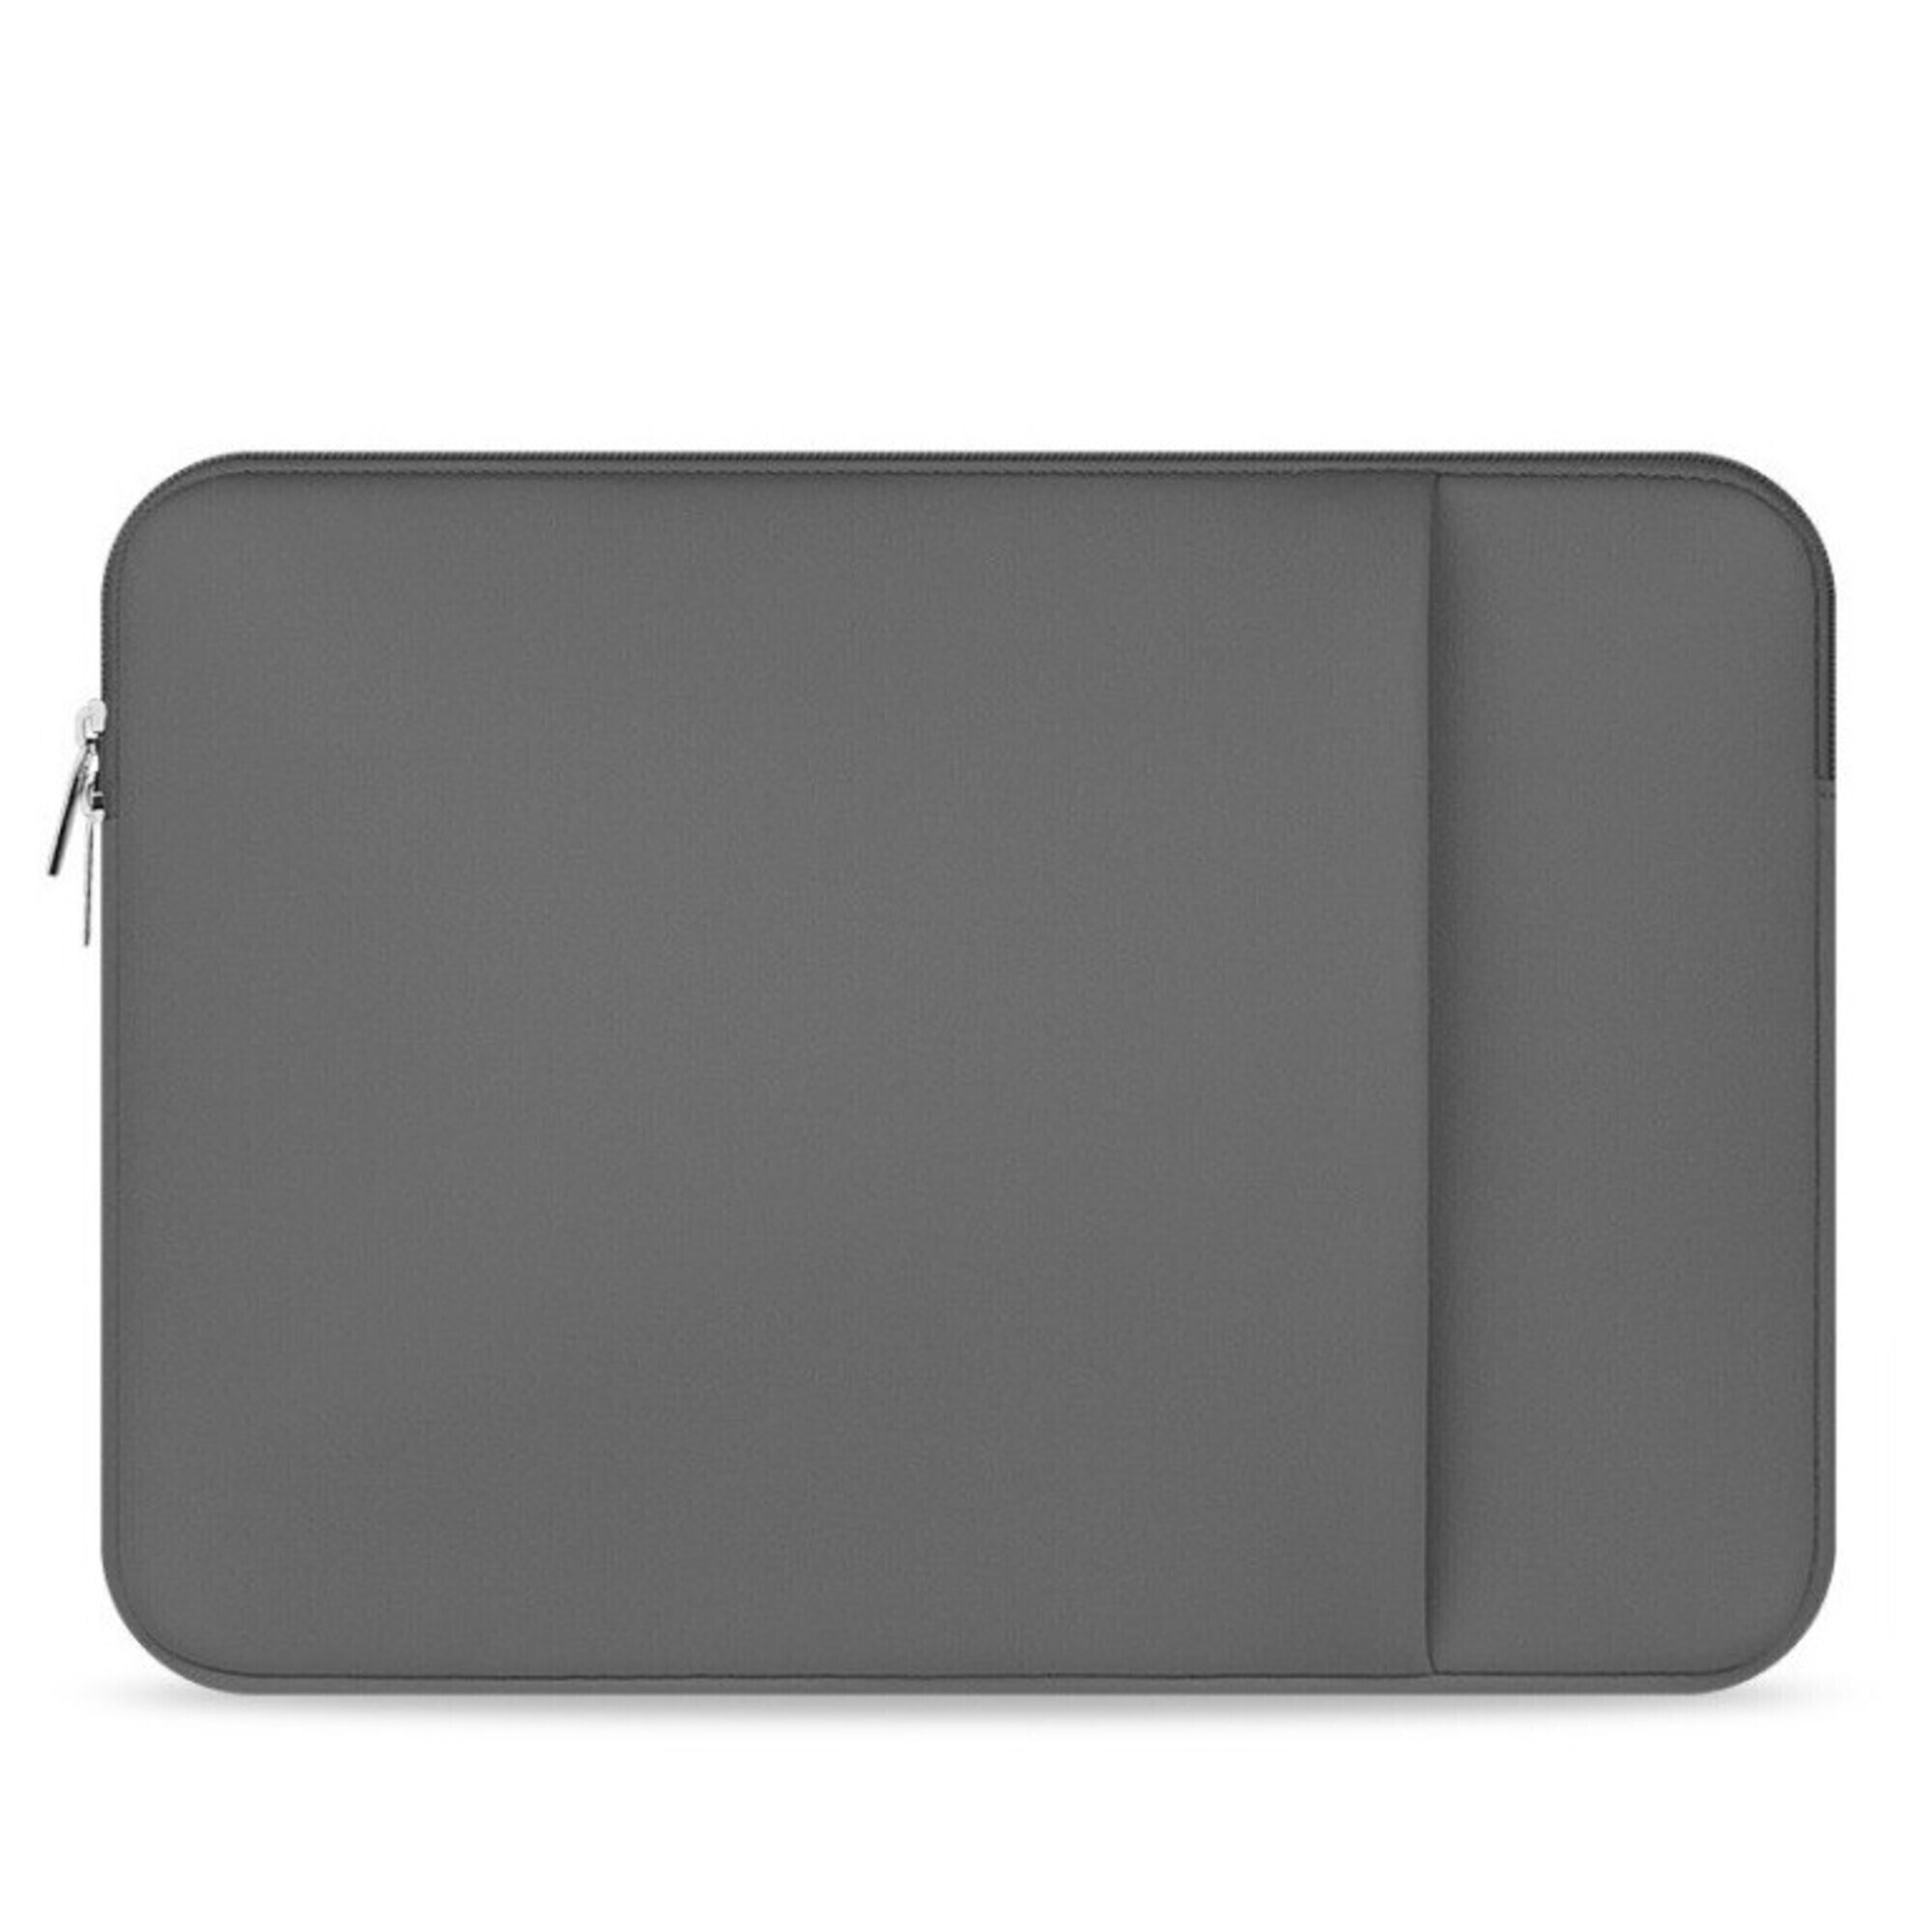 shot case pochette 13 pour macbook apple air housse protection sacoche ordinateur portable tablette 13 pouces (gris) - neuf